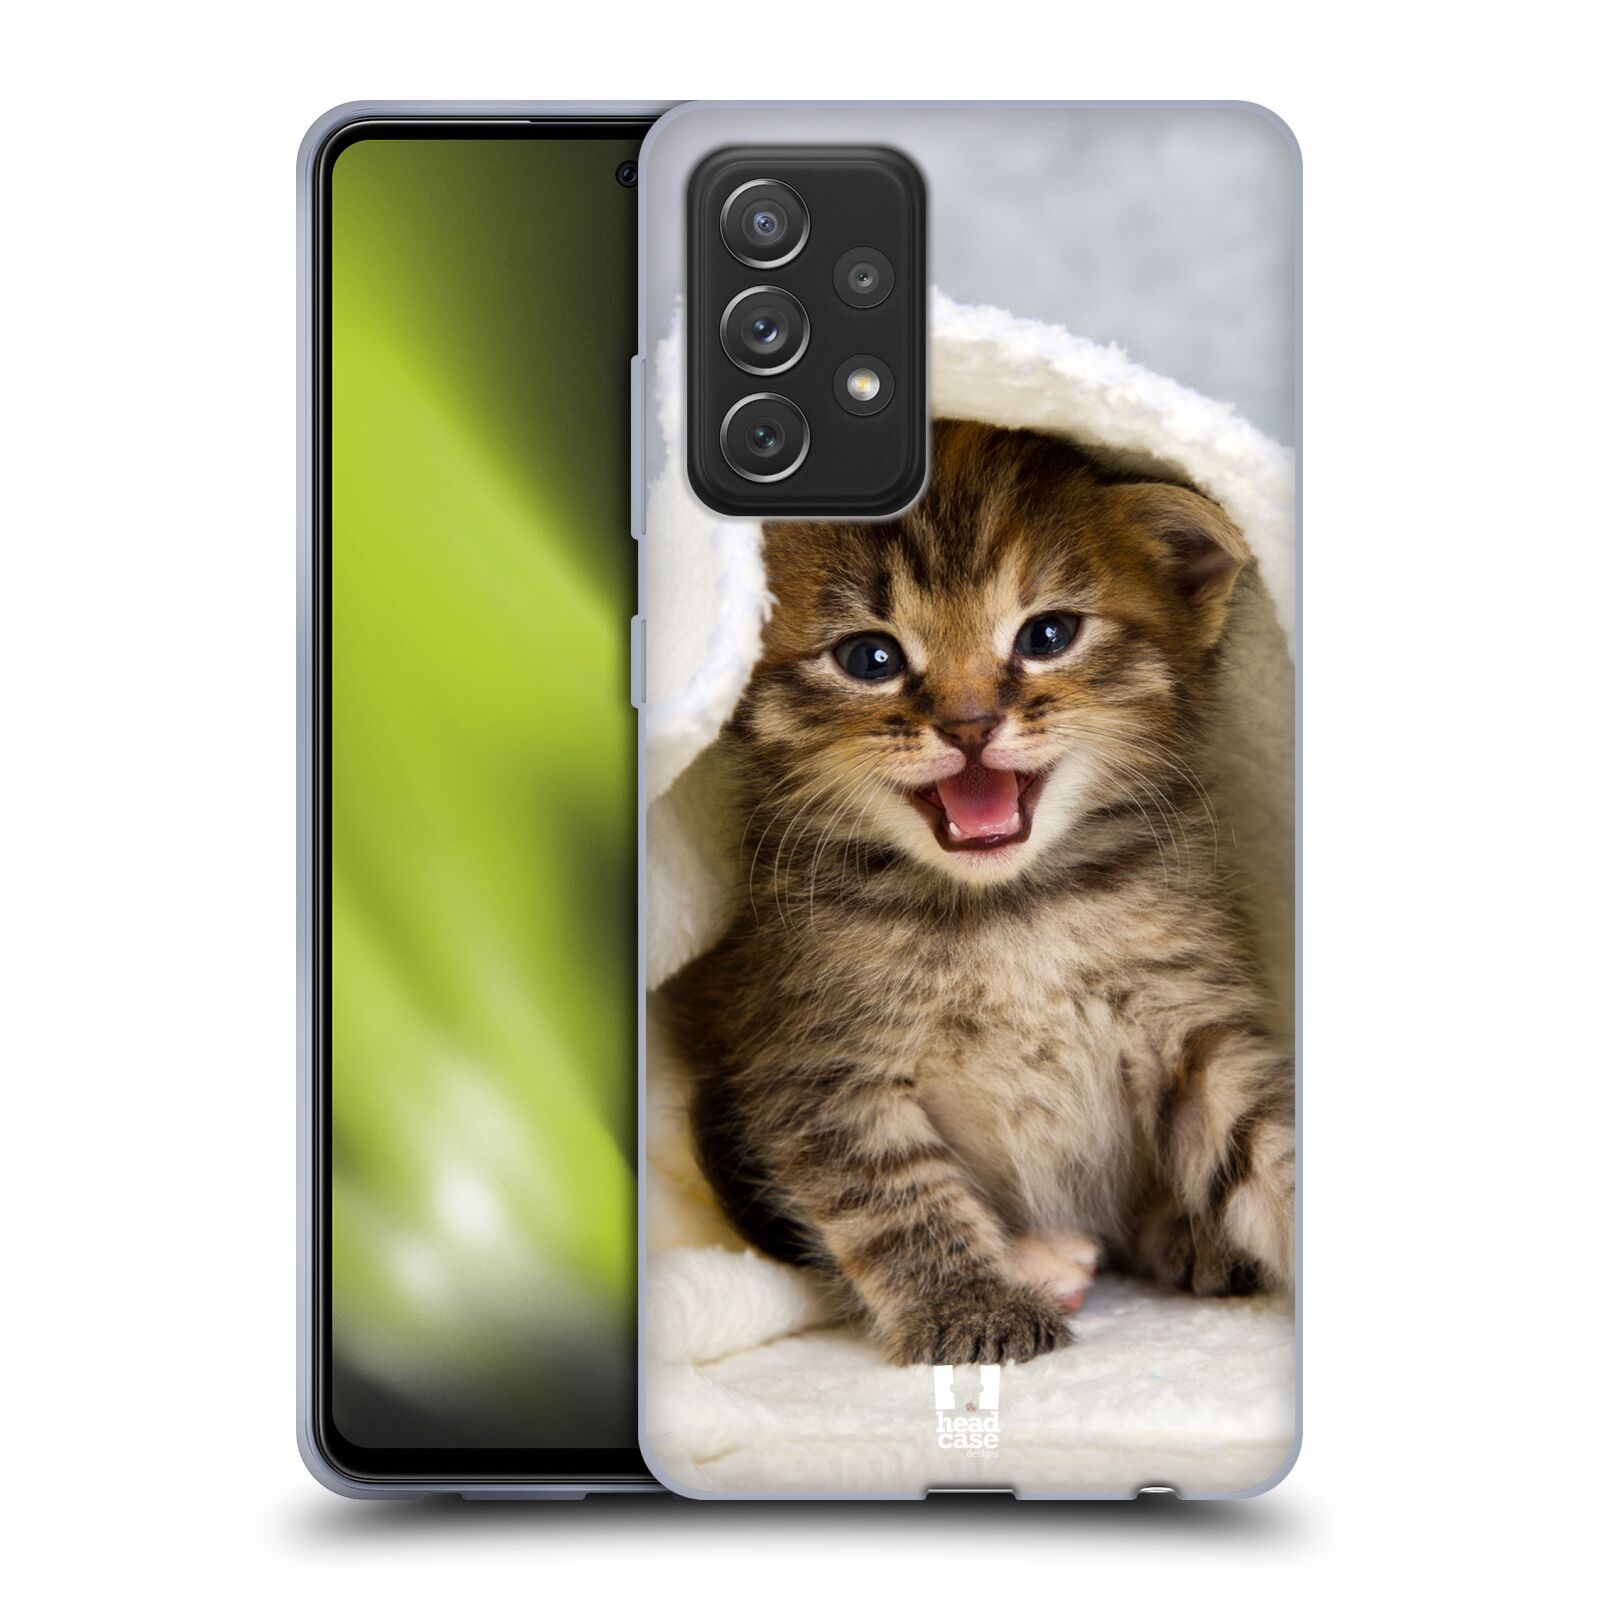 Plastový obal HEAD CASE na mobil Samsung Galaxy A72 / A72 5G vzor Kočičky koťata foto kotě v ručníku